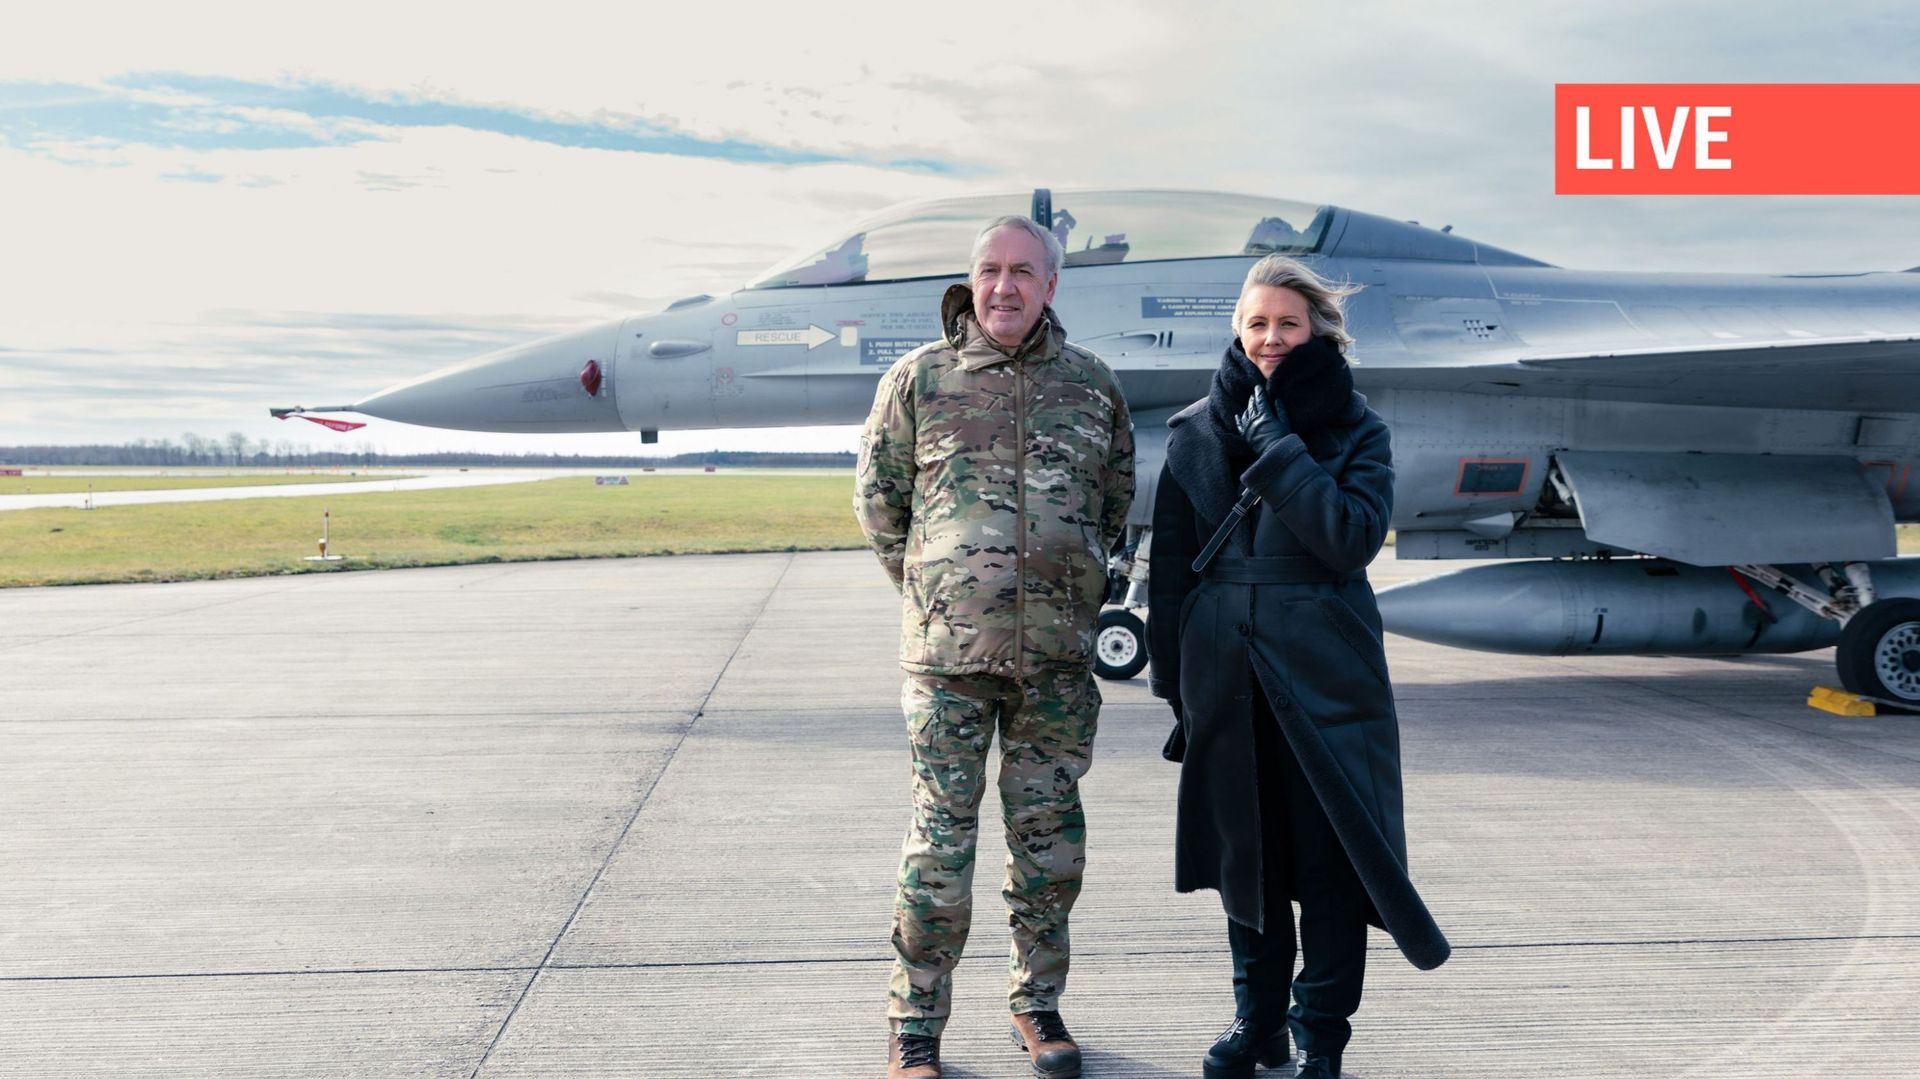 Des photos diffusées lundi 18 mars 2024 par la Défense belge montrent la ministre de la Défense Ludivine Dedonder et le chef de la Défense, le général Michel Hofman, sur la base aérienne de Skrydstrup au Danemark, dans le cadre d'une visite de la ministre